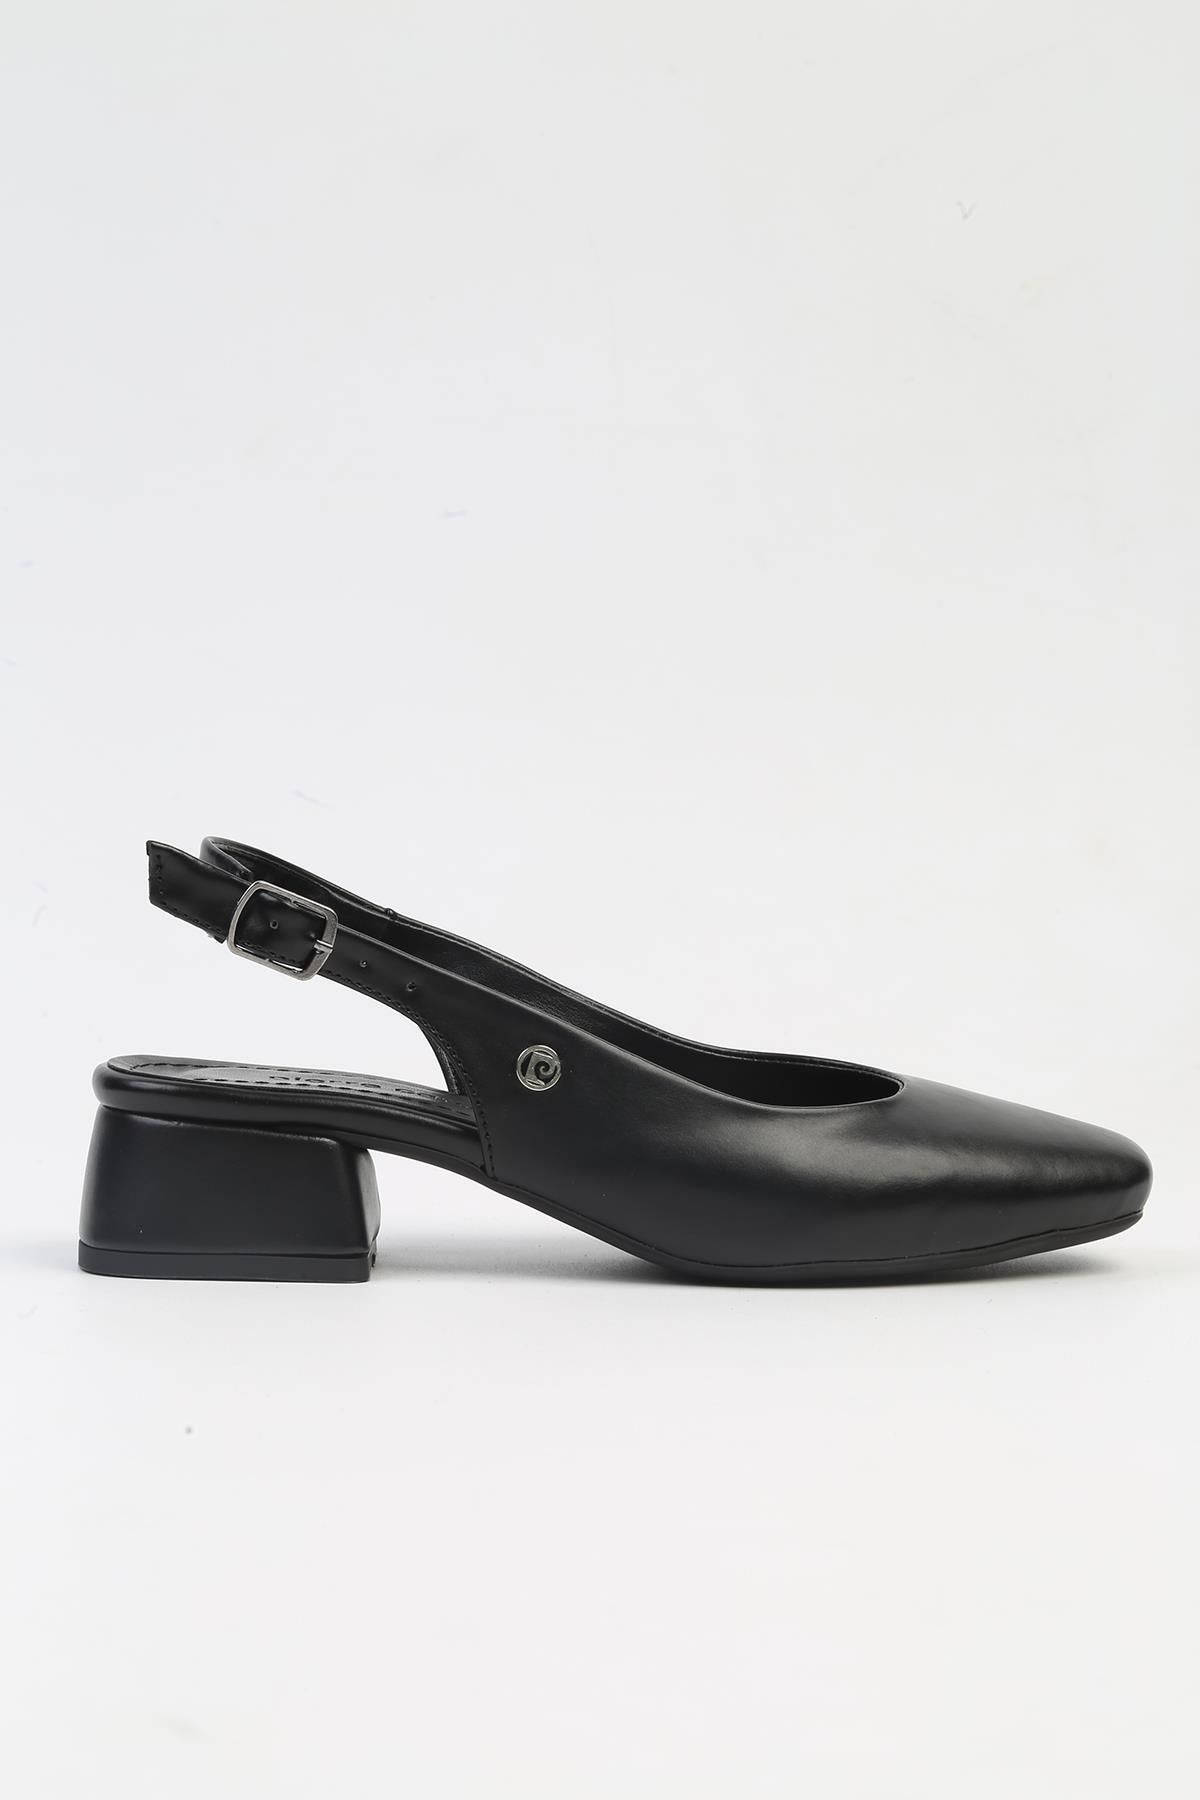 Pierre Cardin ® | PC-52272-3592 Siyah-Kadın Topuklu Ayakkabı